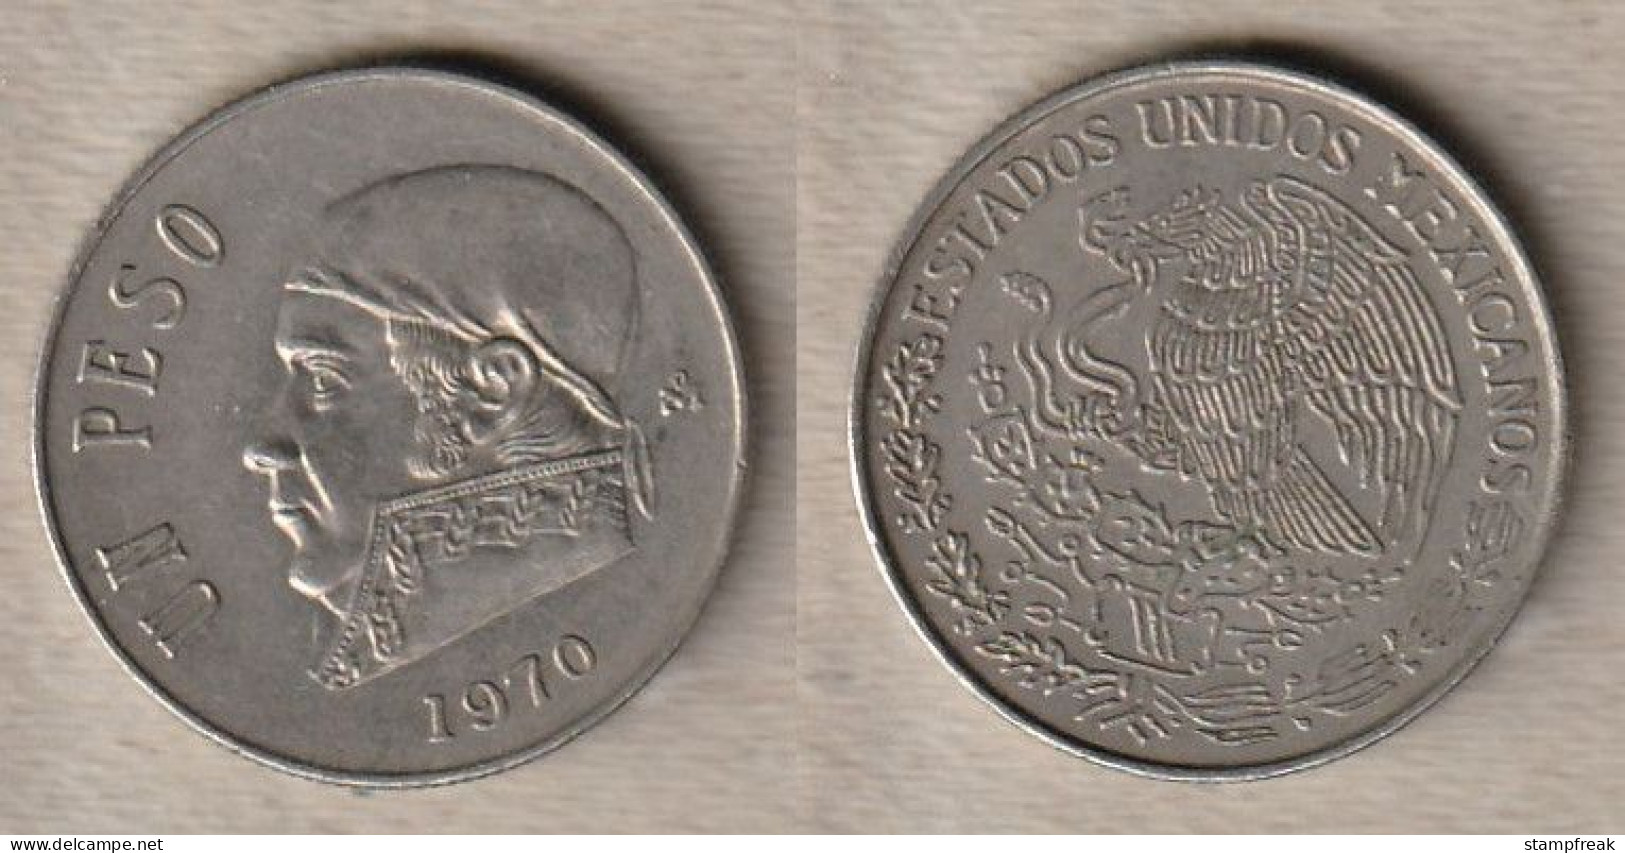 02316) Mexico, 1 Peso 1970 - Mexico